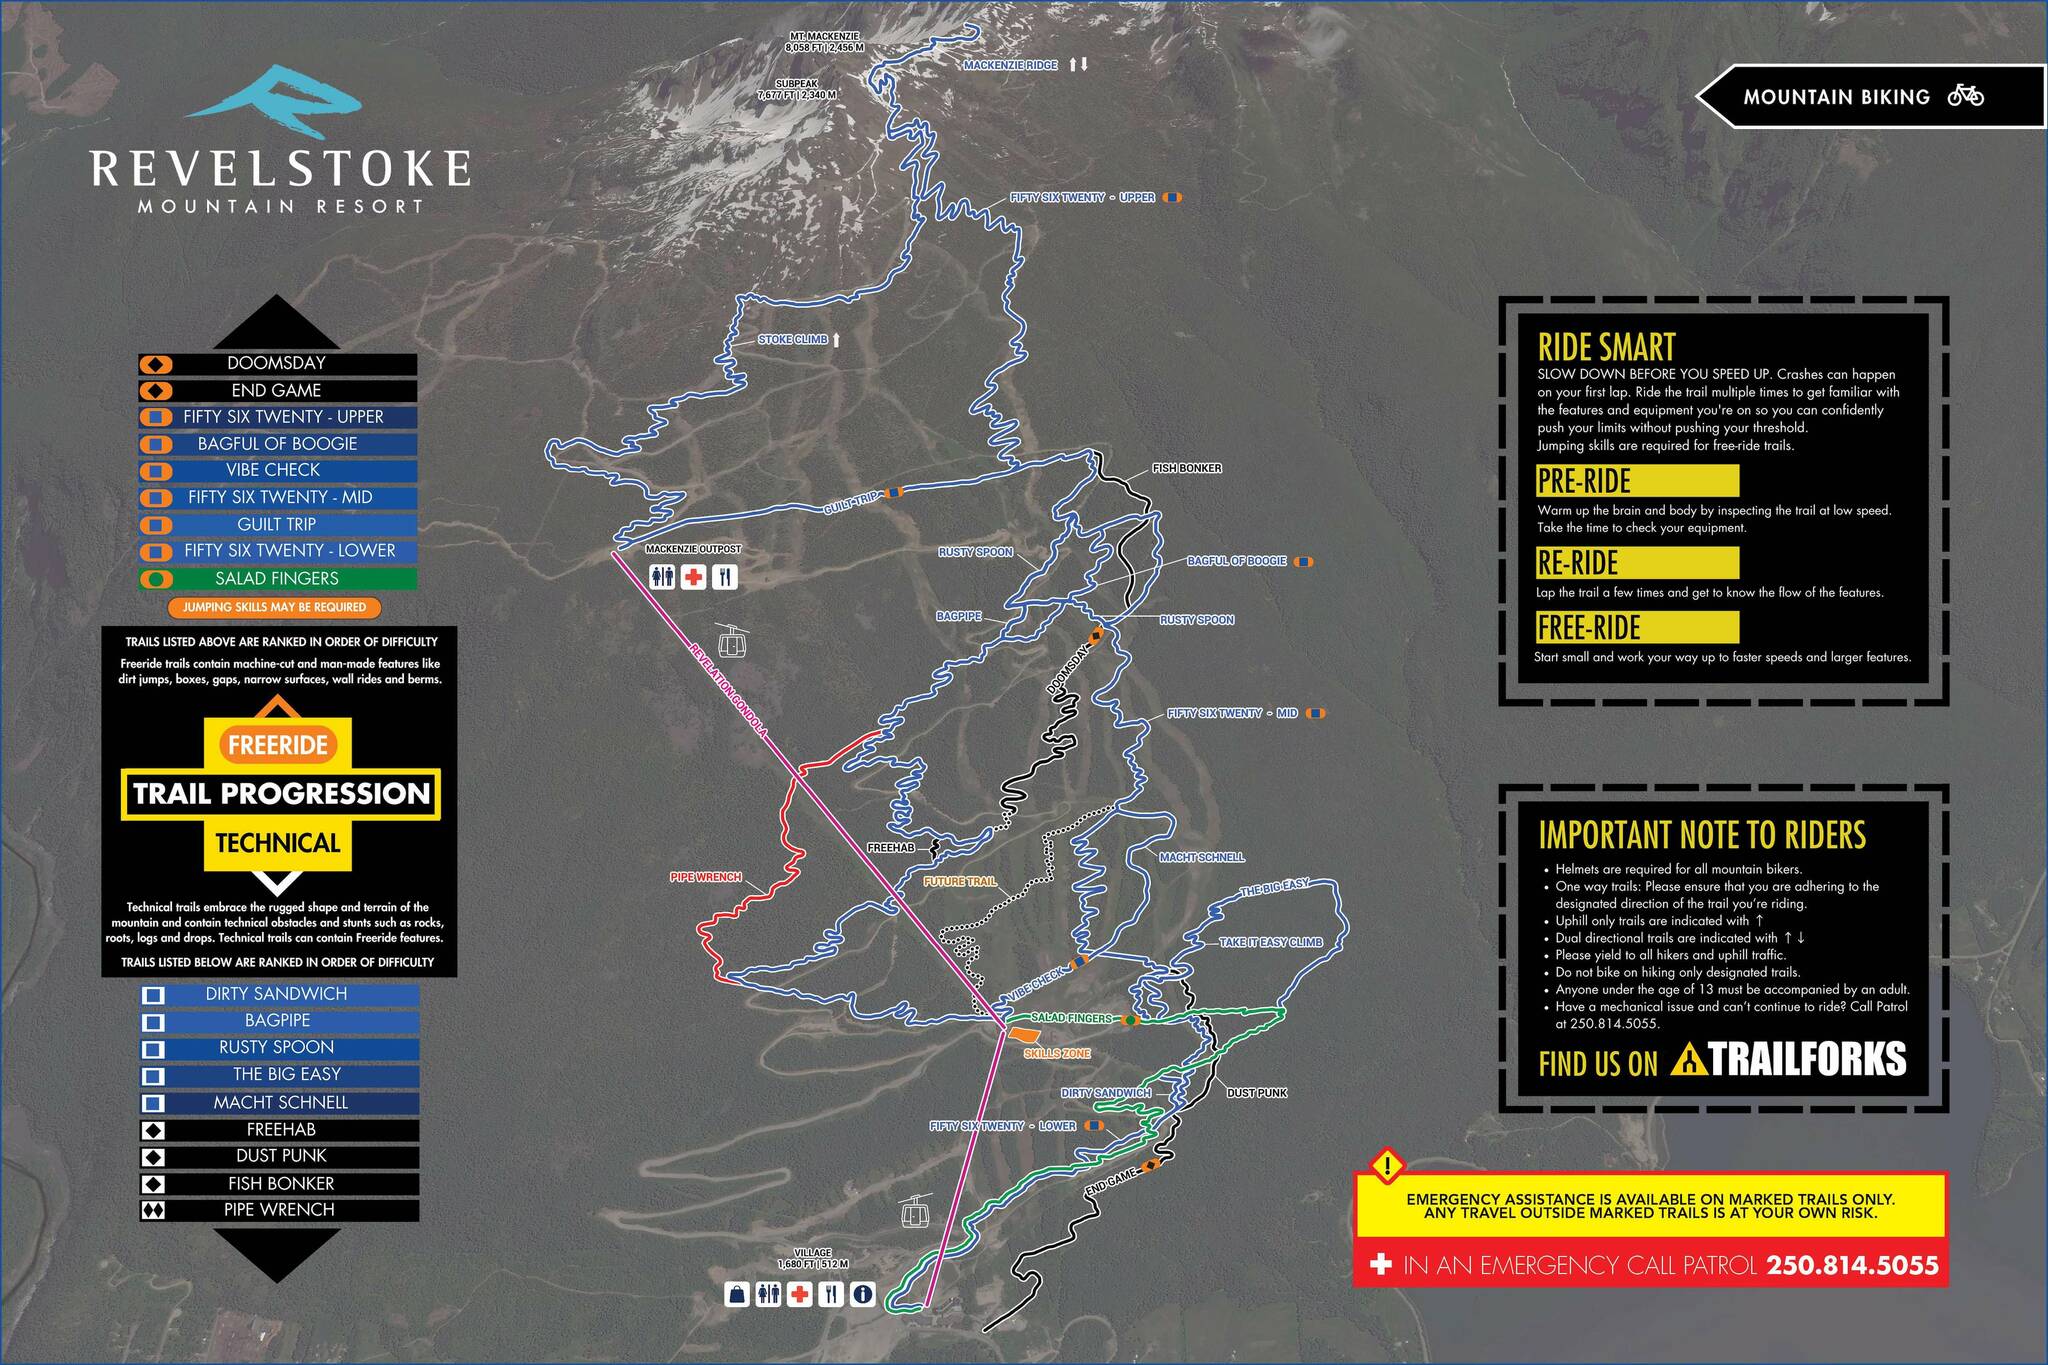 Revelstoke Mountain Resorts mountain biking trail map. (Revelstoke Mountain Resort)